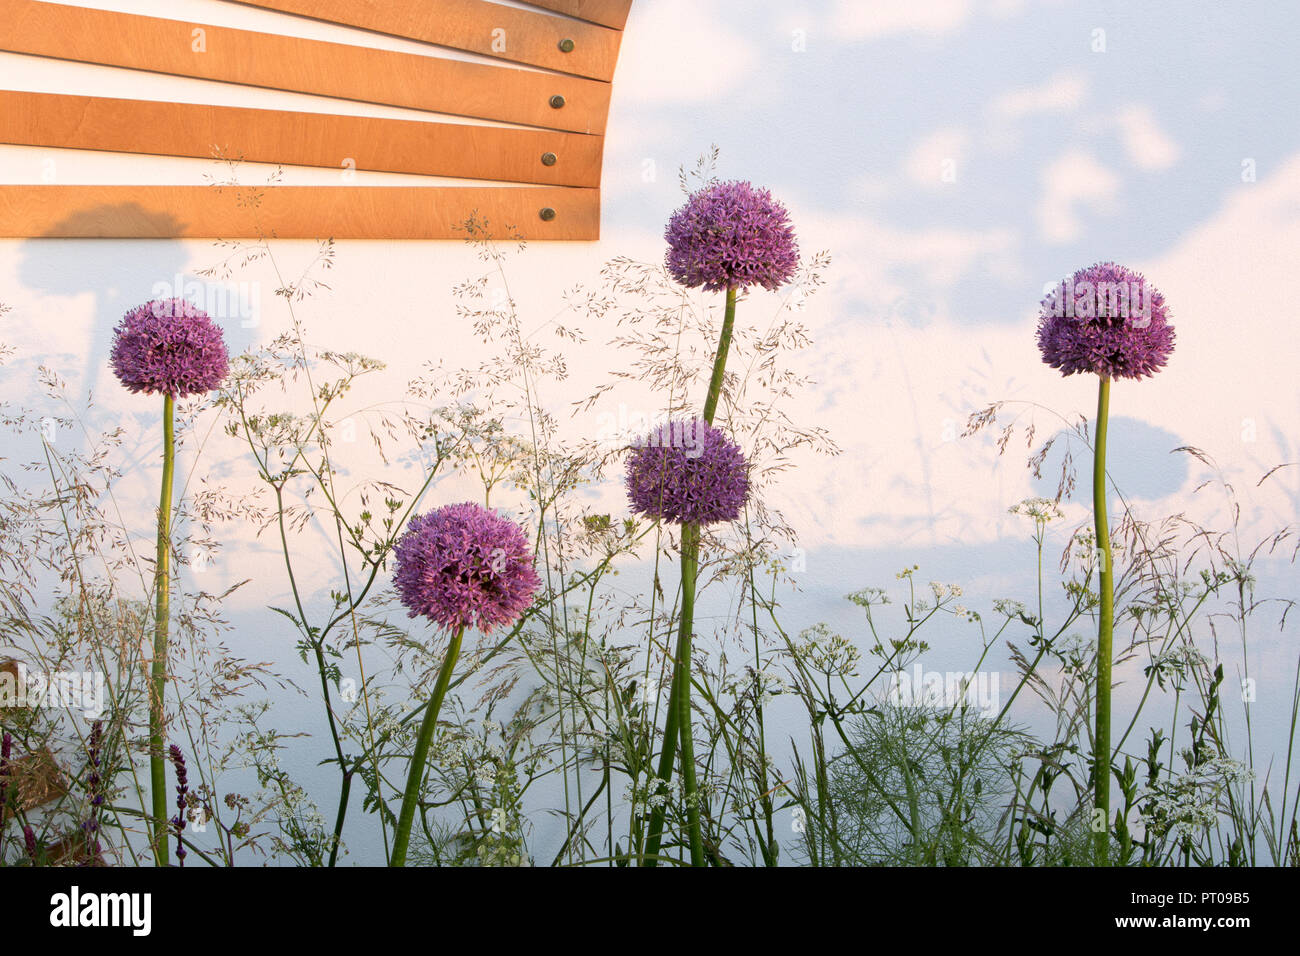 Allium und Anthriscus sylvestris in Grenze gegen Weiß Garten Wand - Spa Garten - Molekulare Garten, RHS Malvern Spring Festival 2017 Stockfoto